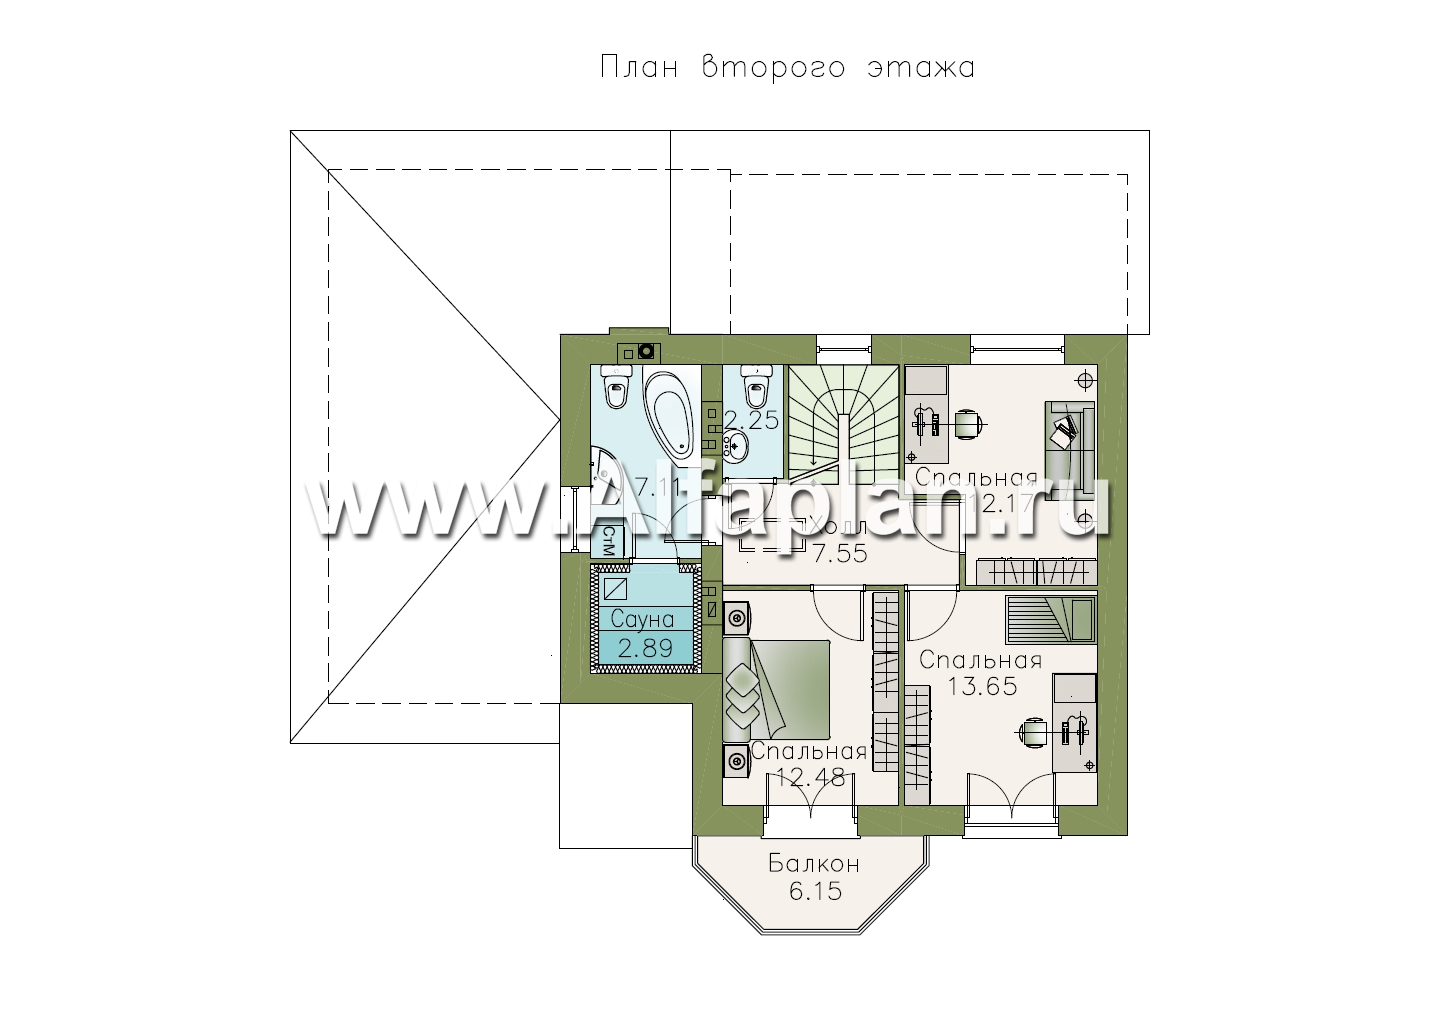 Изображение плана проекта Проект двухэтажного дома из газобетона «Шевалье» с кабинетом на 1 эт, с эркером и гаражом №2